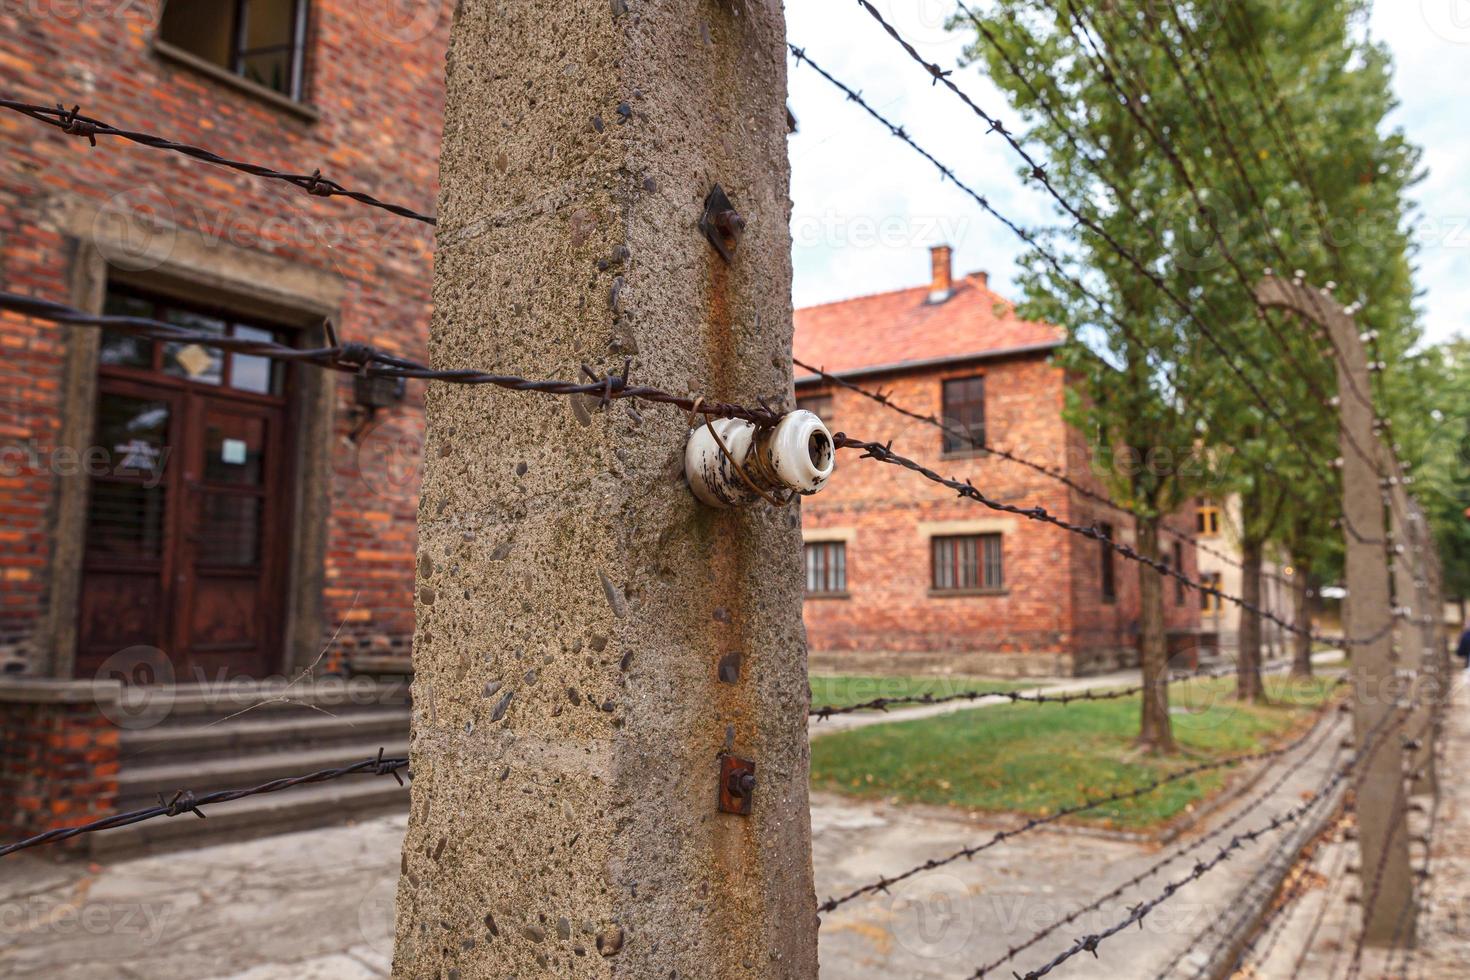 Nazi-Konzentrationslager-Museum Auschwitz-Birkenau in Polen. auschwitz oswiecim jüdisches gefängnis im besetzten polen während des zweiten weltkriegs und des holocaust. foto